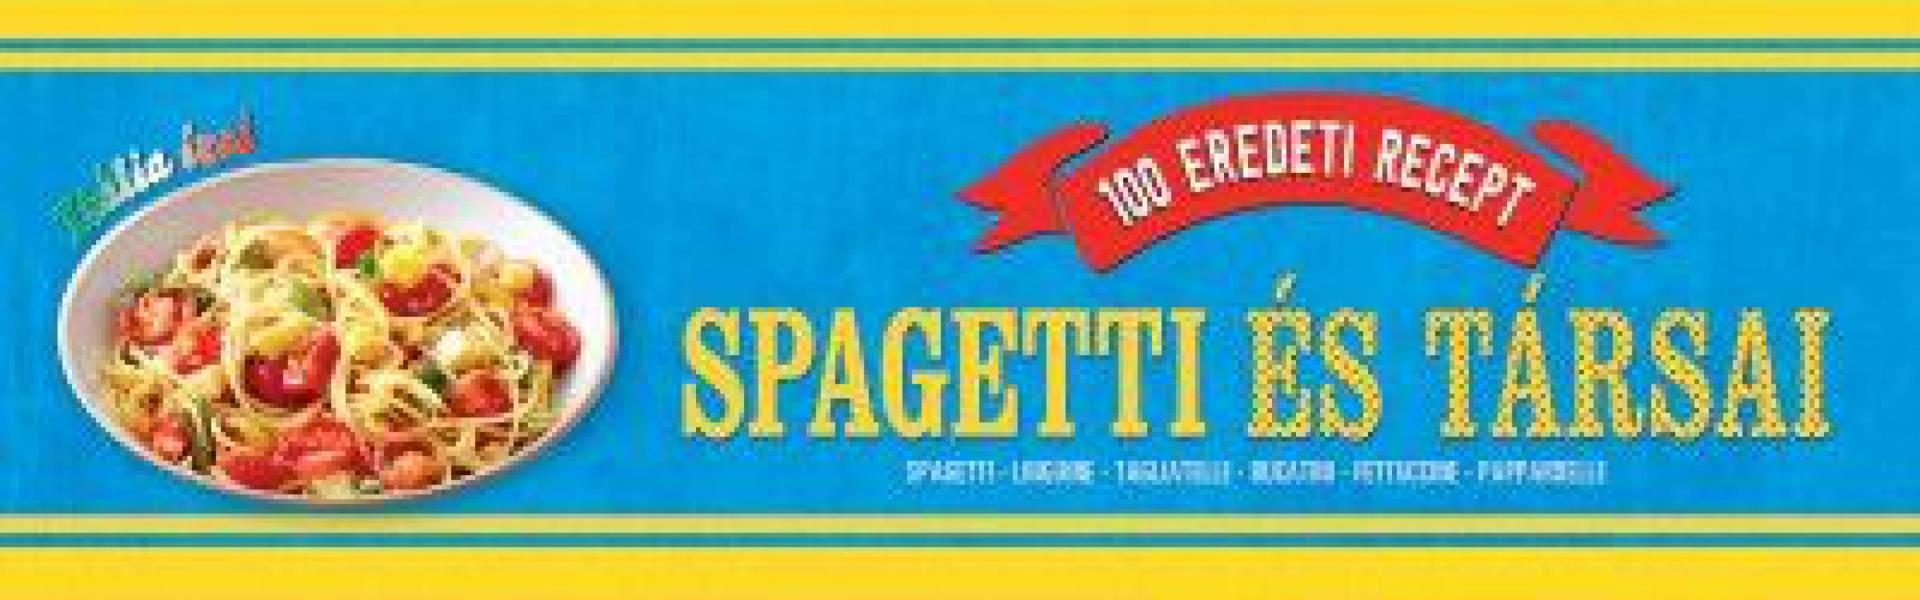 Spagetti és társai